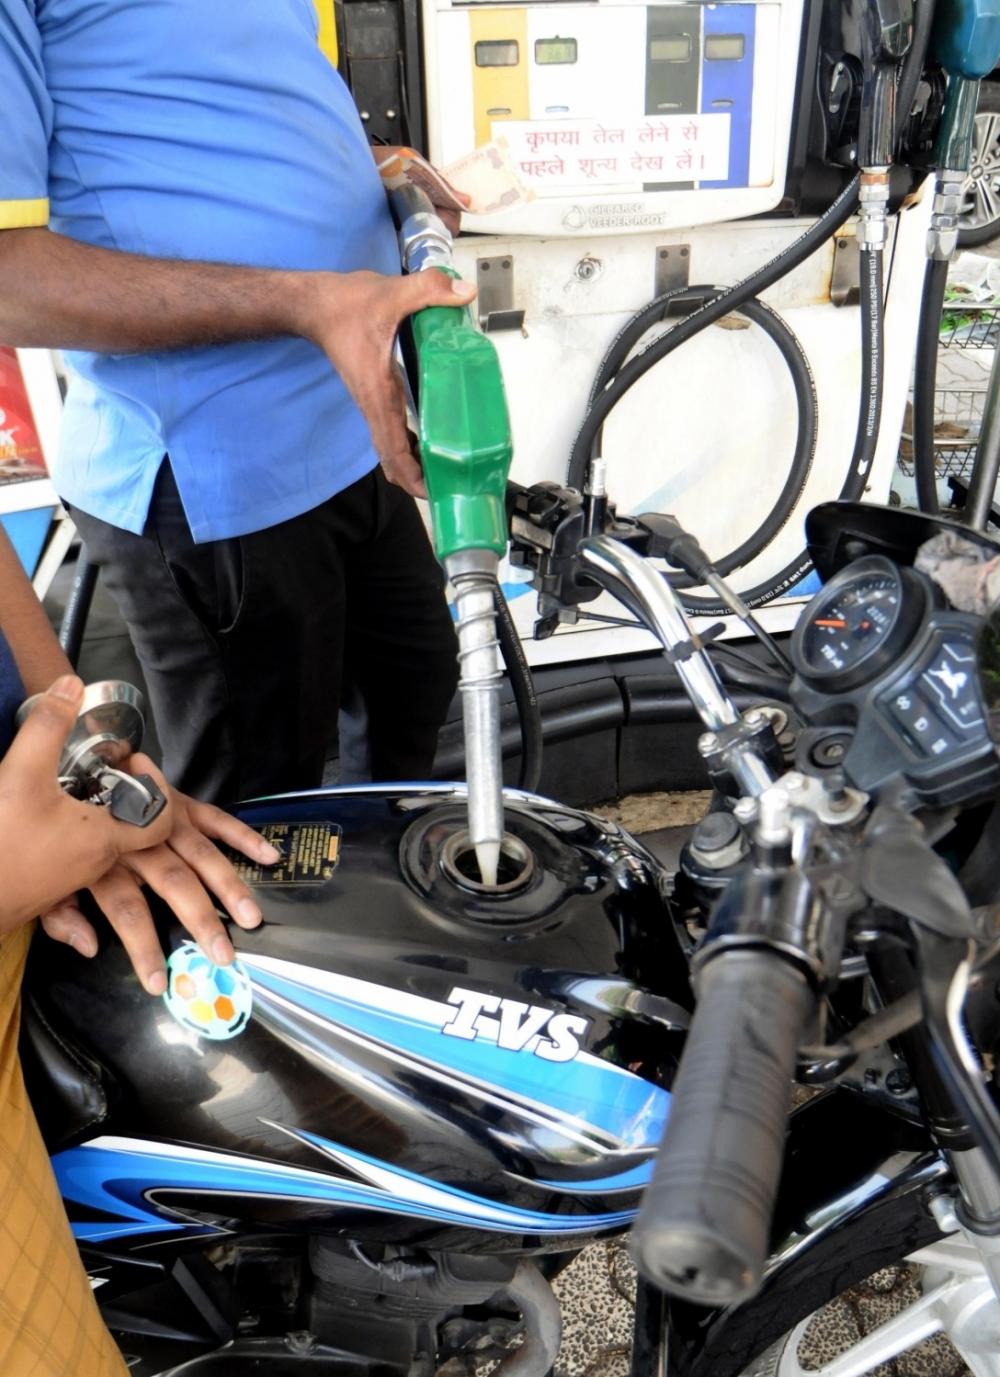 The Weekend Leader - Diesel price increased, petrol rate remains steady